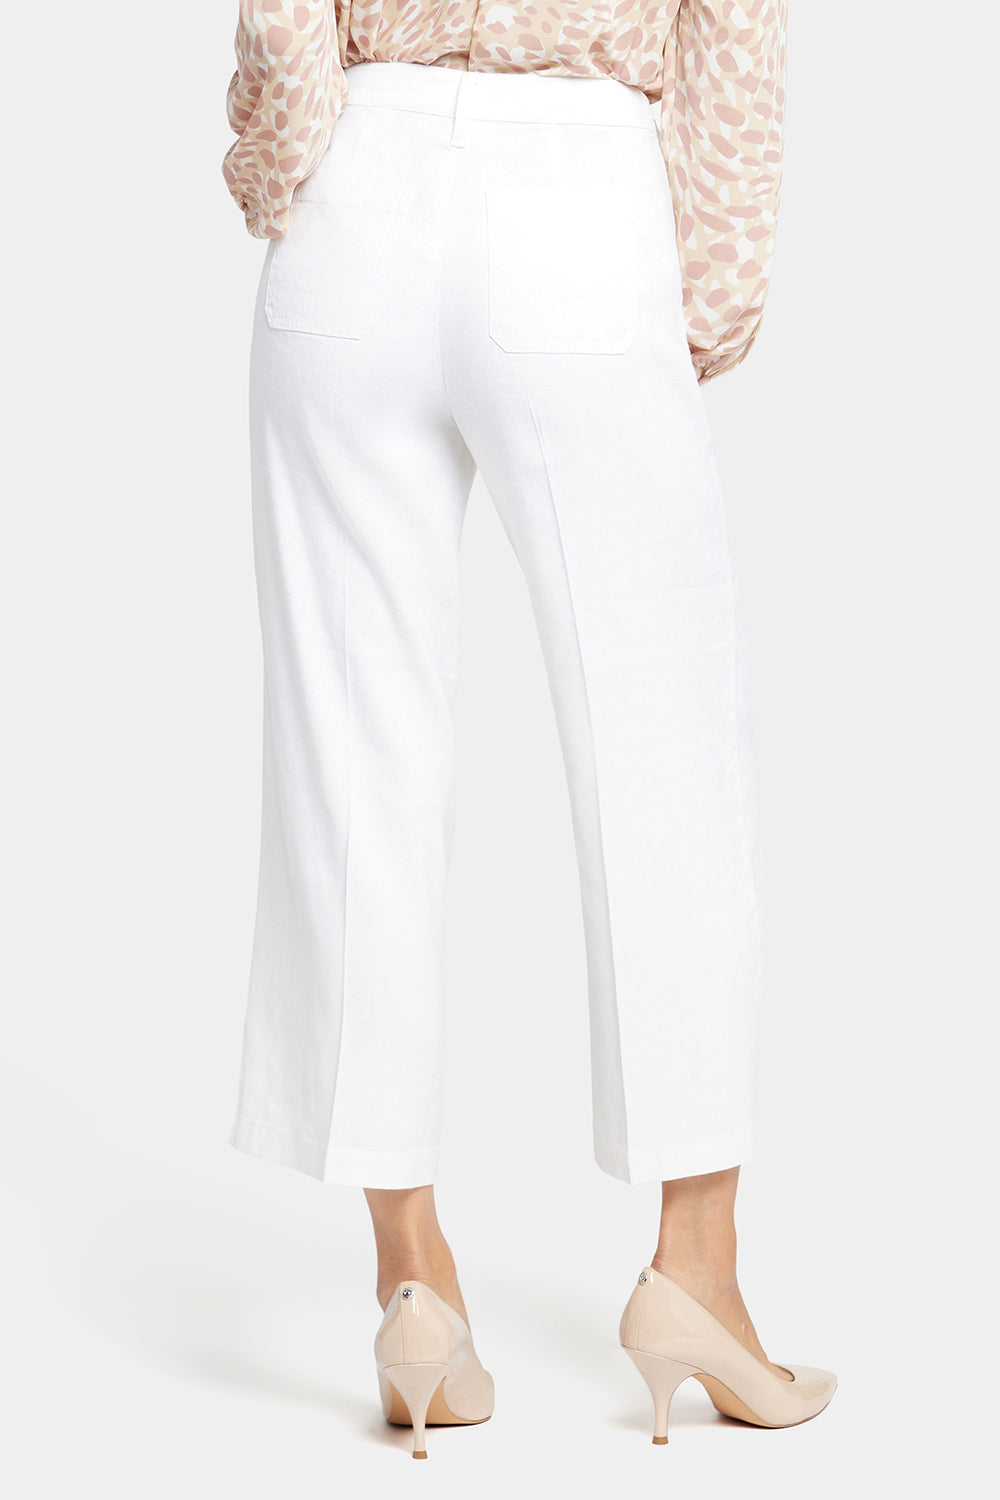 White Stretch Capri Trousers